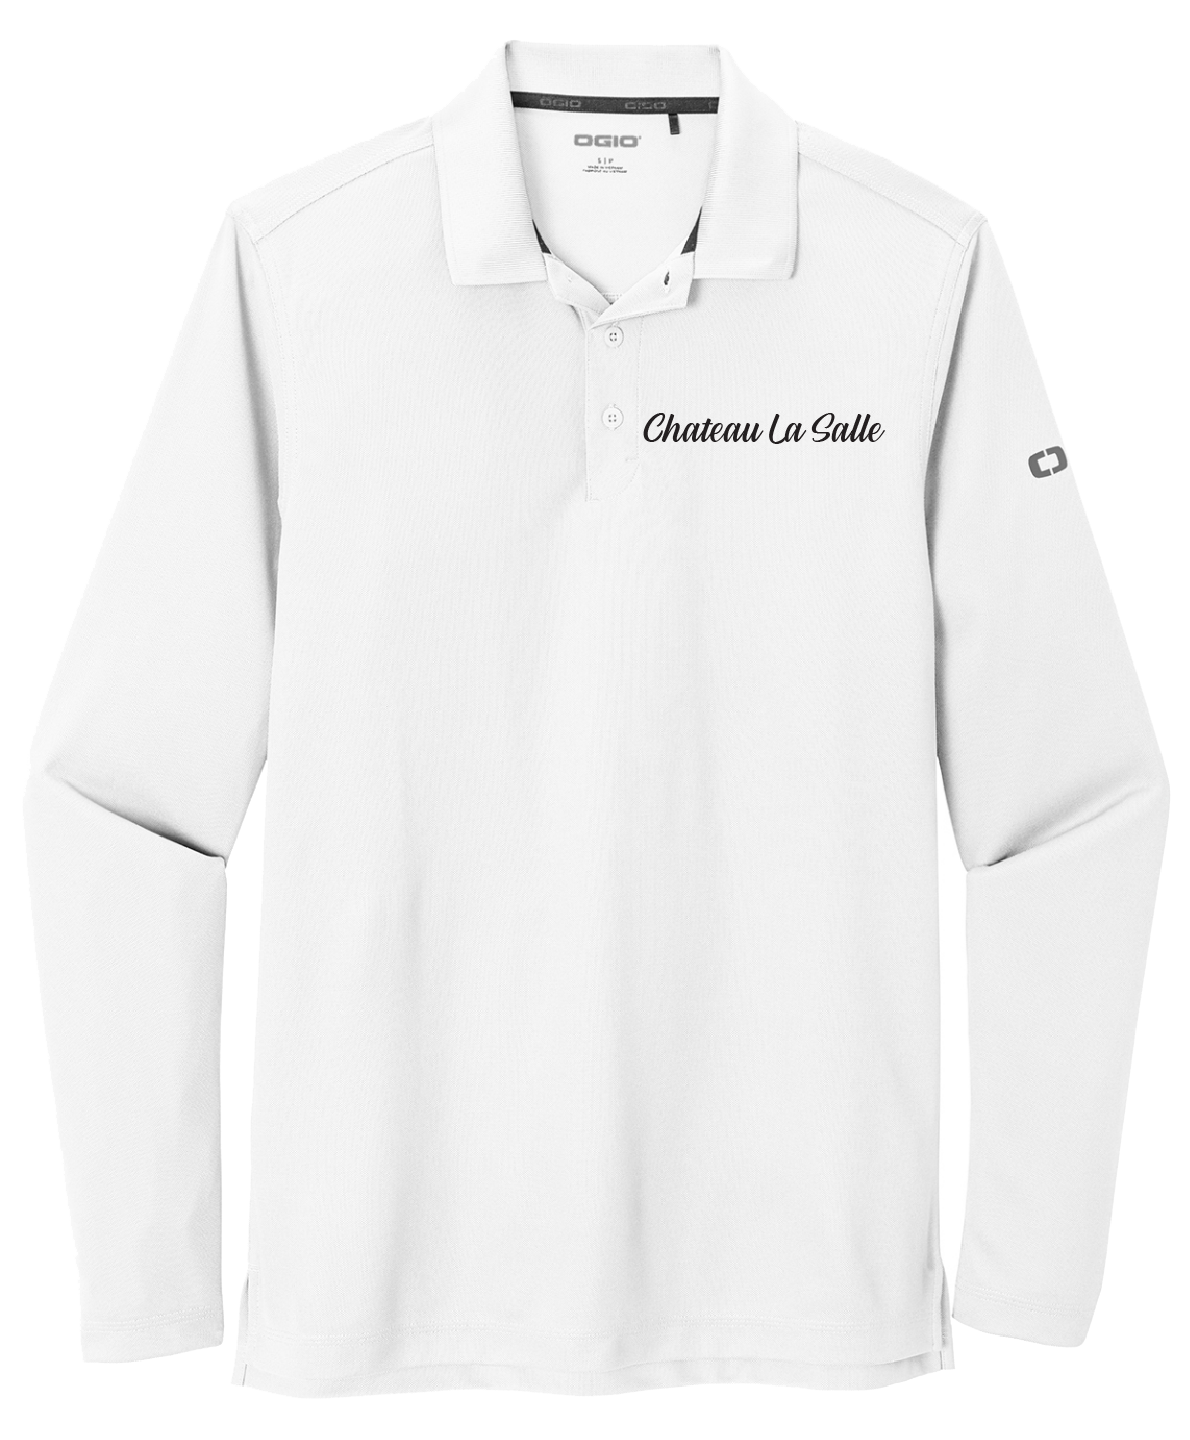 Chateau La Salle - Mens - OGIO ® Caliber2.0 Long Sleeve